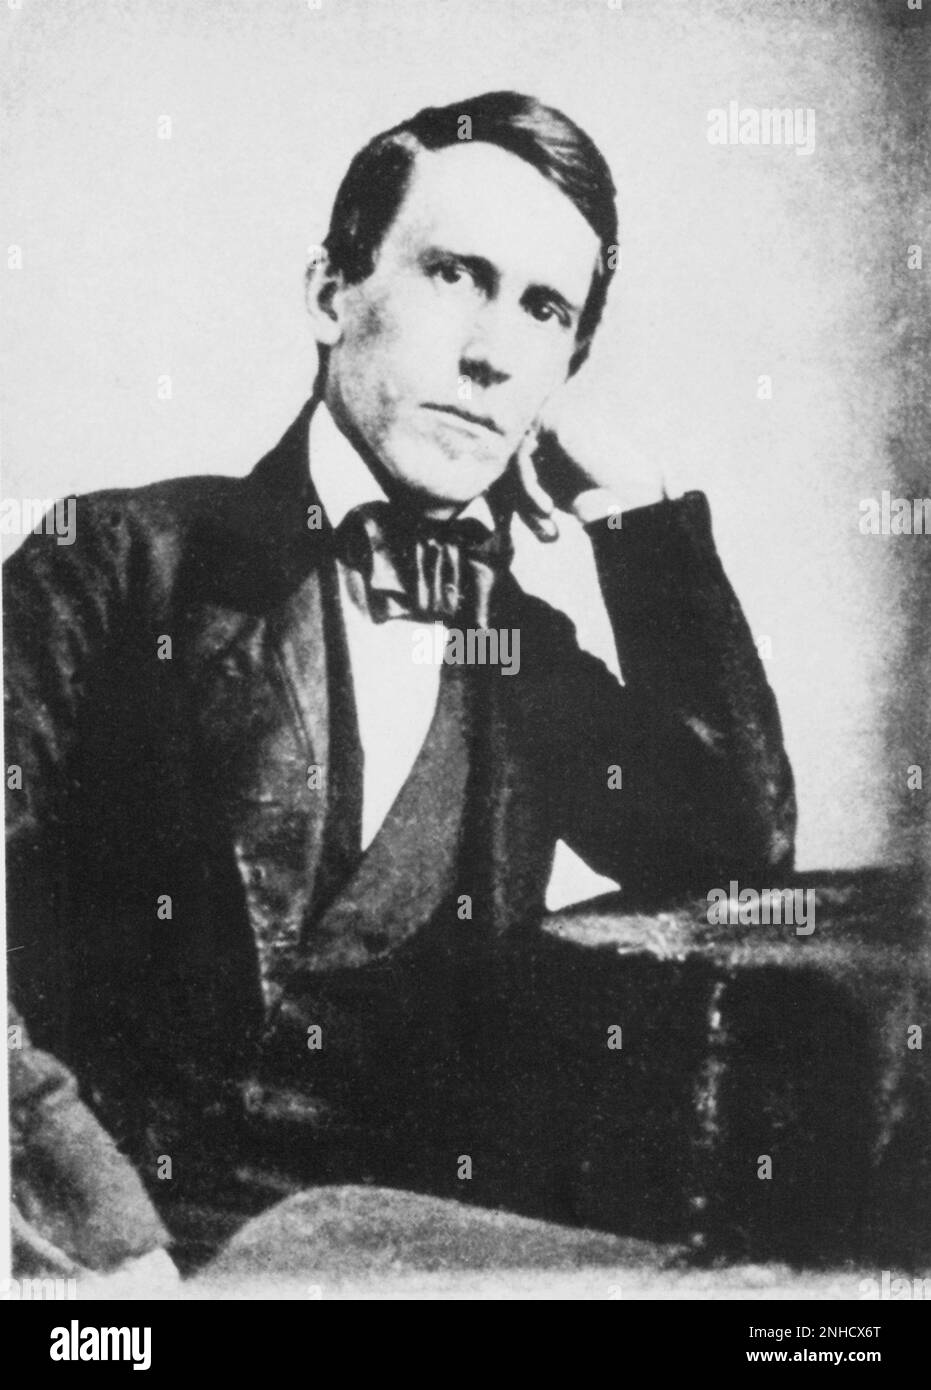 1859 Ca, EE.UU. : THE american MUSIC COMPOSITORE STEPHEN FOSTER ( 1826 - 1864 ) - COMPOSITORE - MUSICISTA - MUSICA CLÁSICA - CLASICA - BALADAS populares - TIE - cravatta - papillon - collar - colletto ----- Archivio GBB Foto de stock